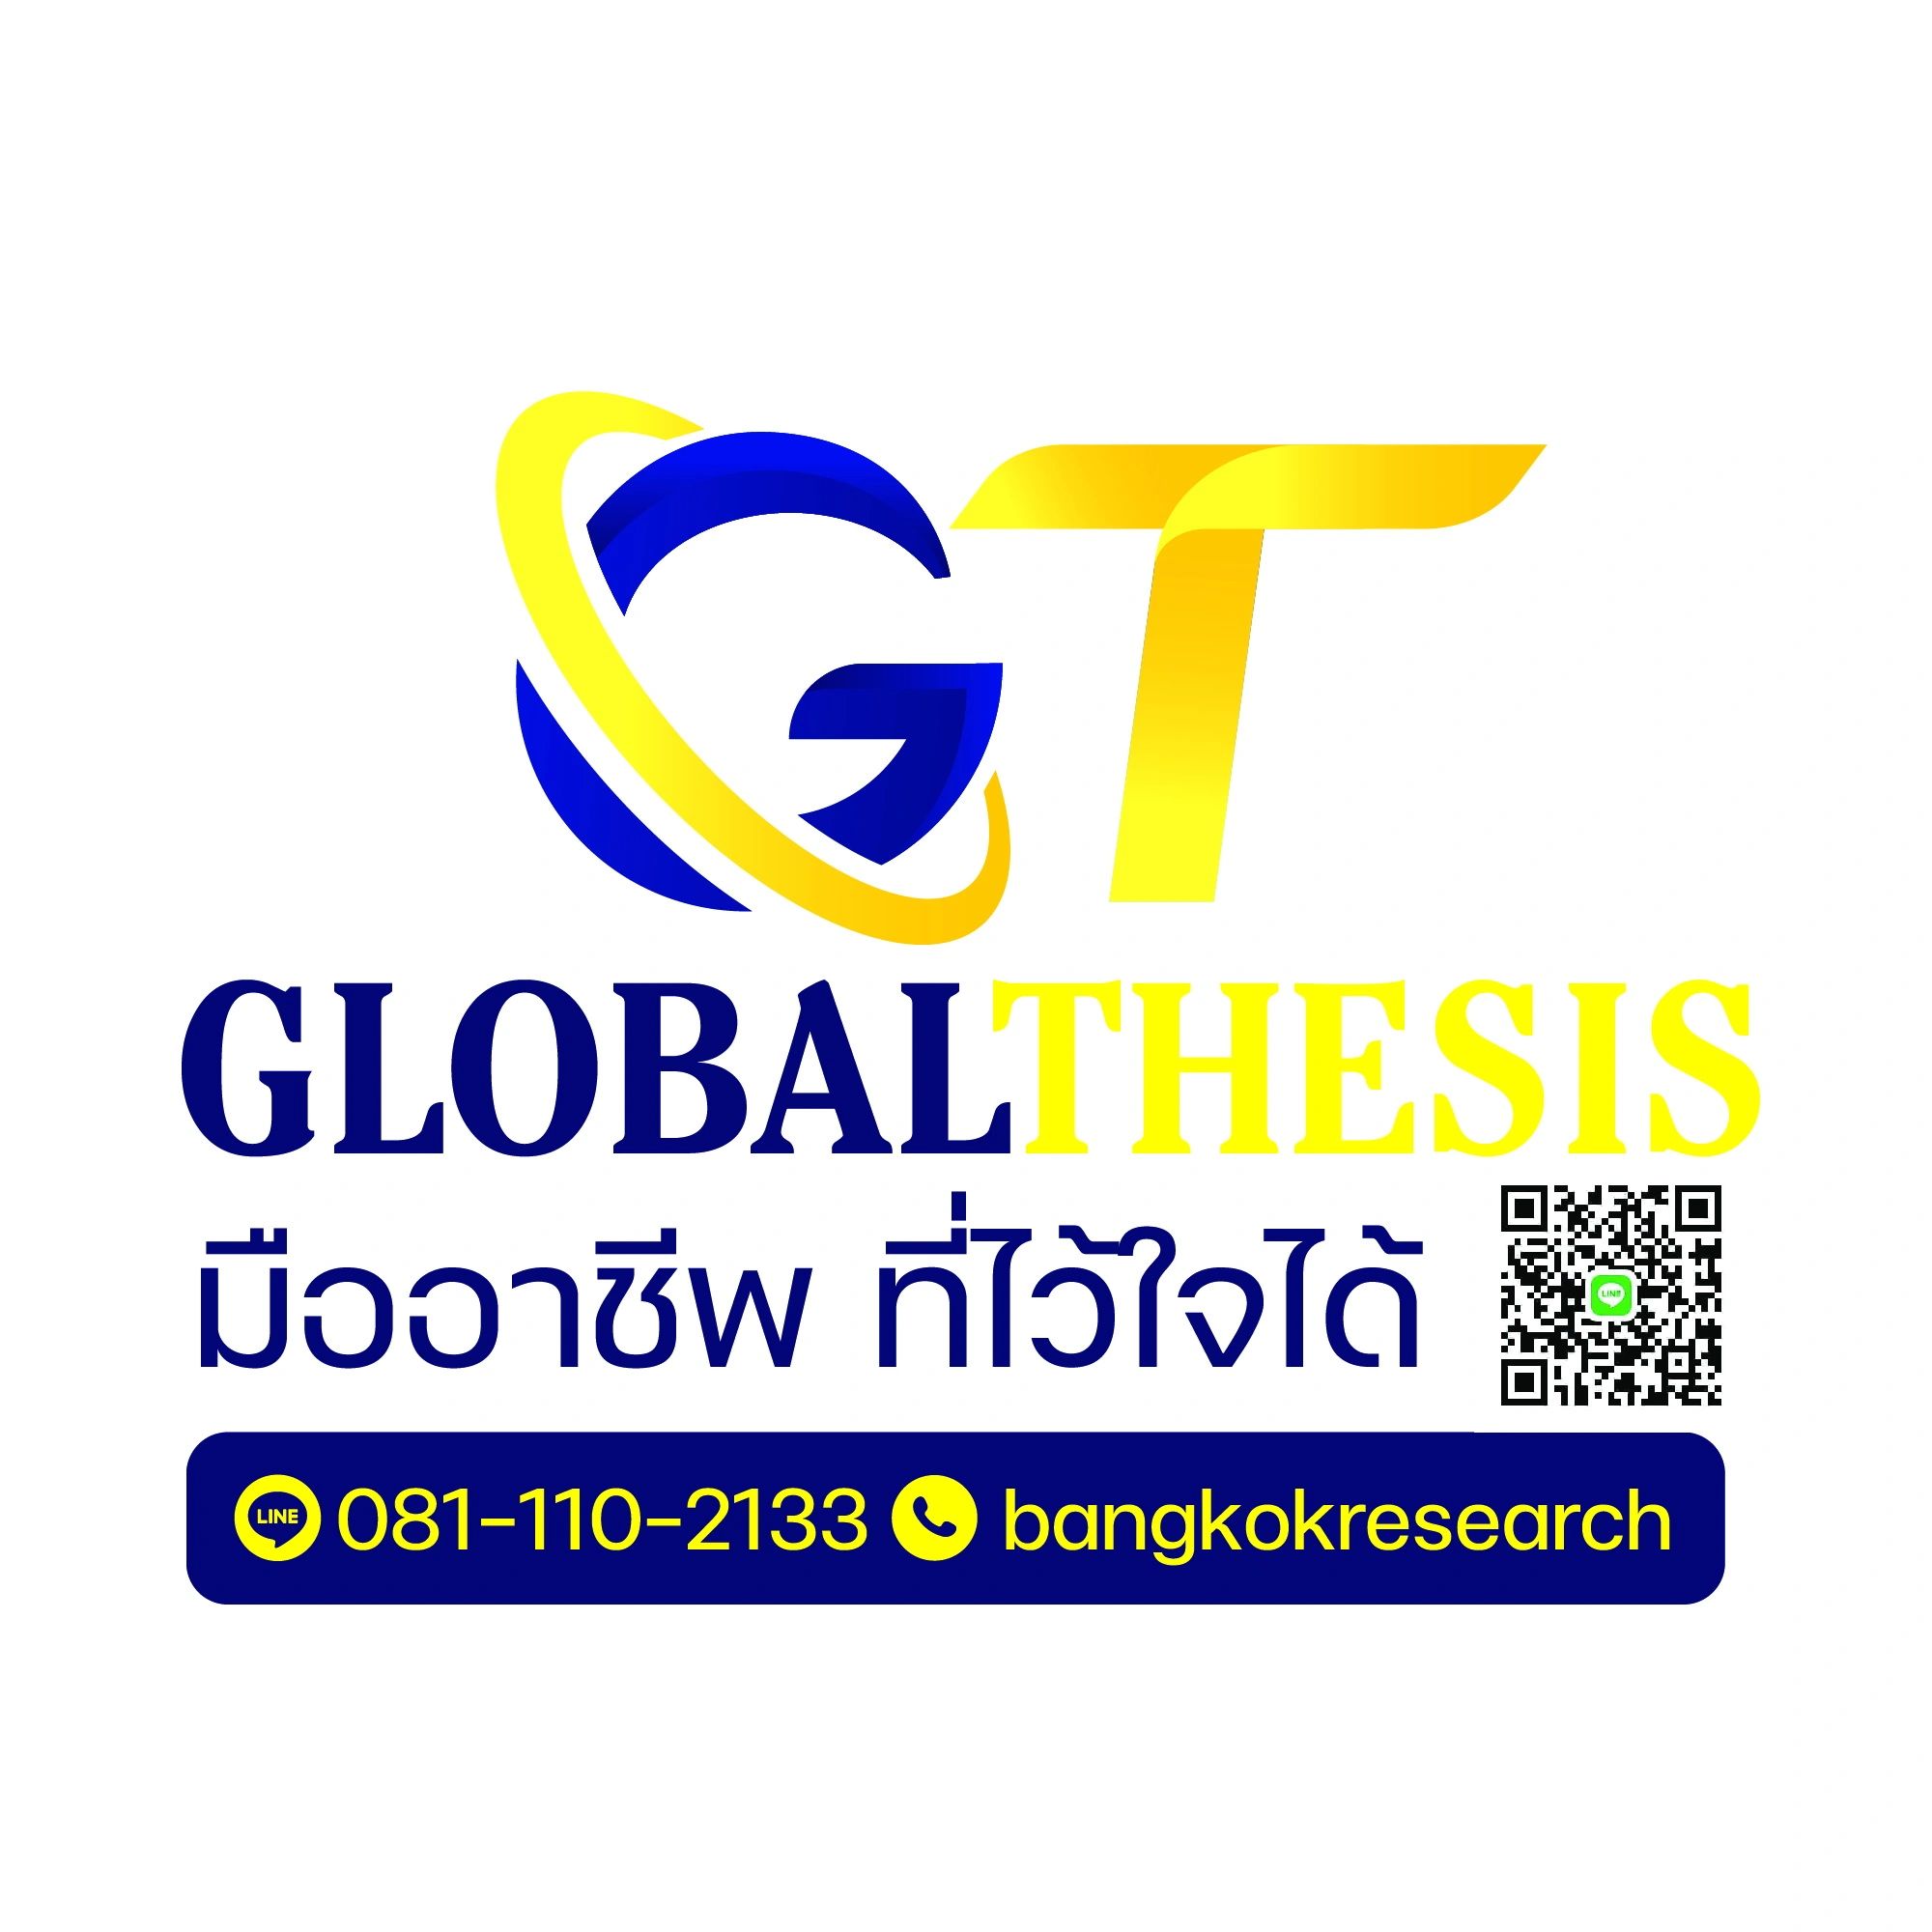 Globalthesis - รับทำวิจัย รับทำวิทยานิพนธ์, รับ ทํา วิทยานิพนธ์, รับทำThesis  รับทำรายงาน, รับทำวิจัย รับทำวิทยานิพนธ์